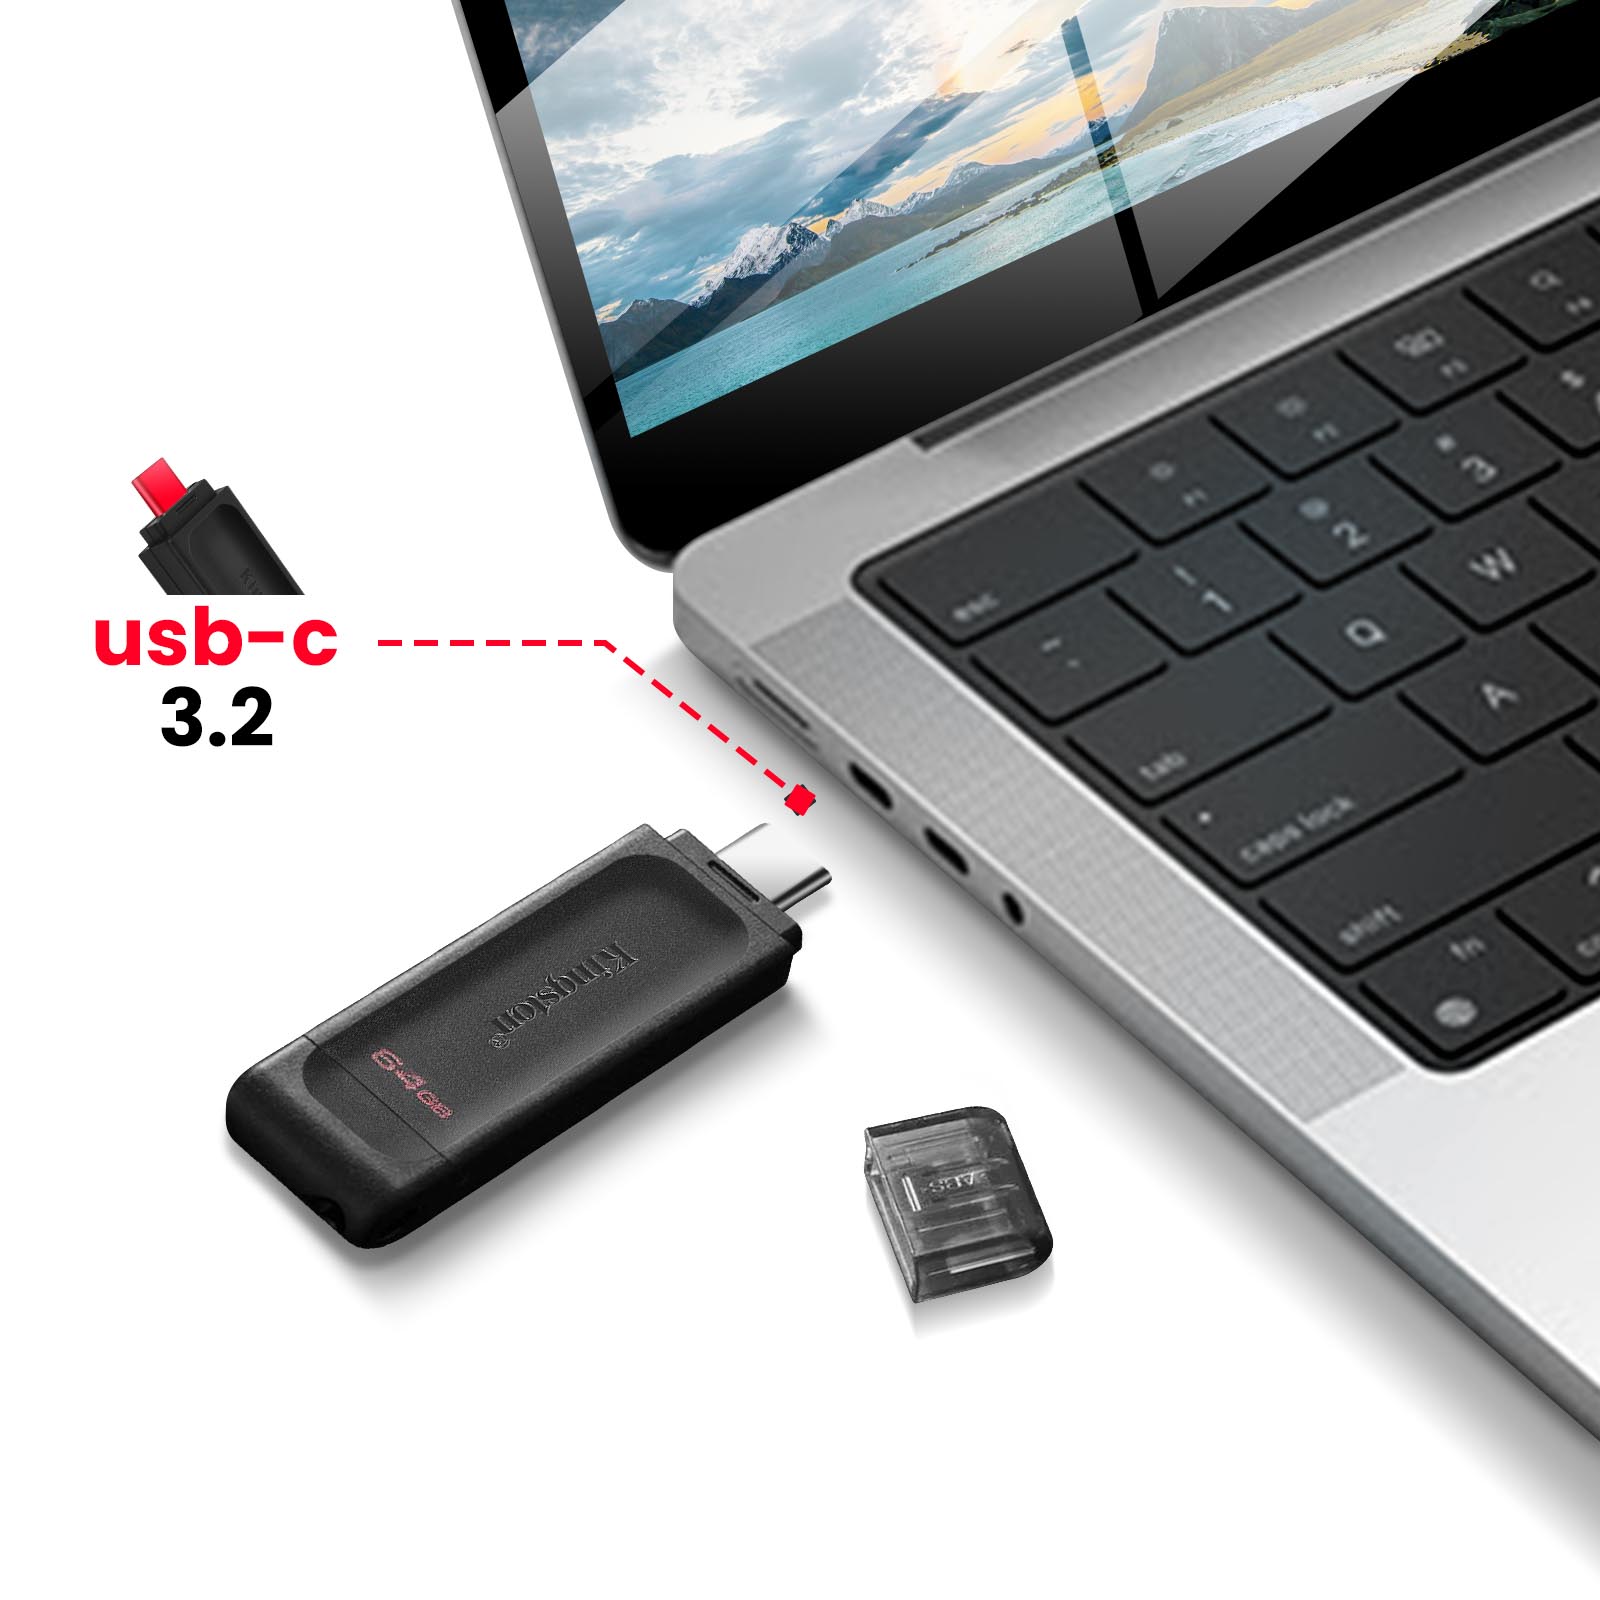 Le top de la sécurité ? Kingston dévoile sa clé USB chiffrée avec sauvegarde  automatique dans le Cloud